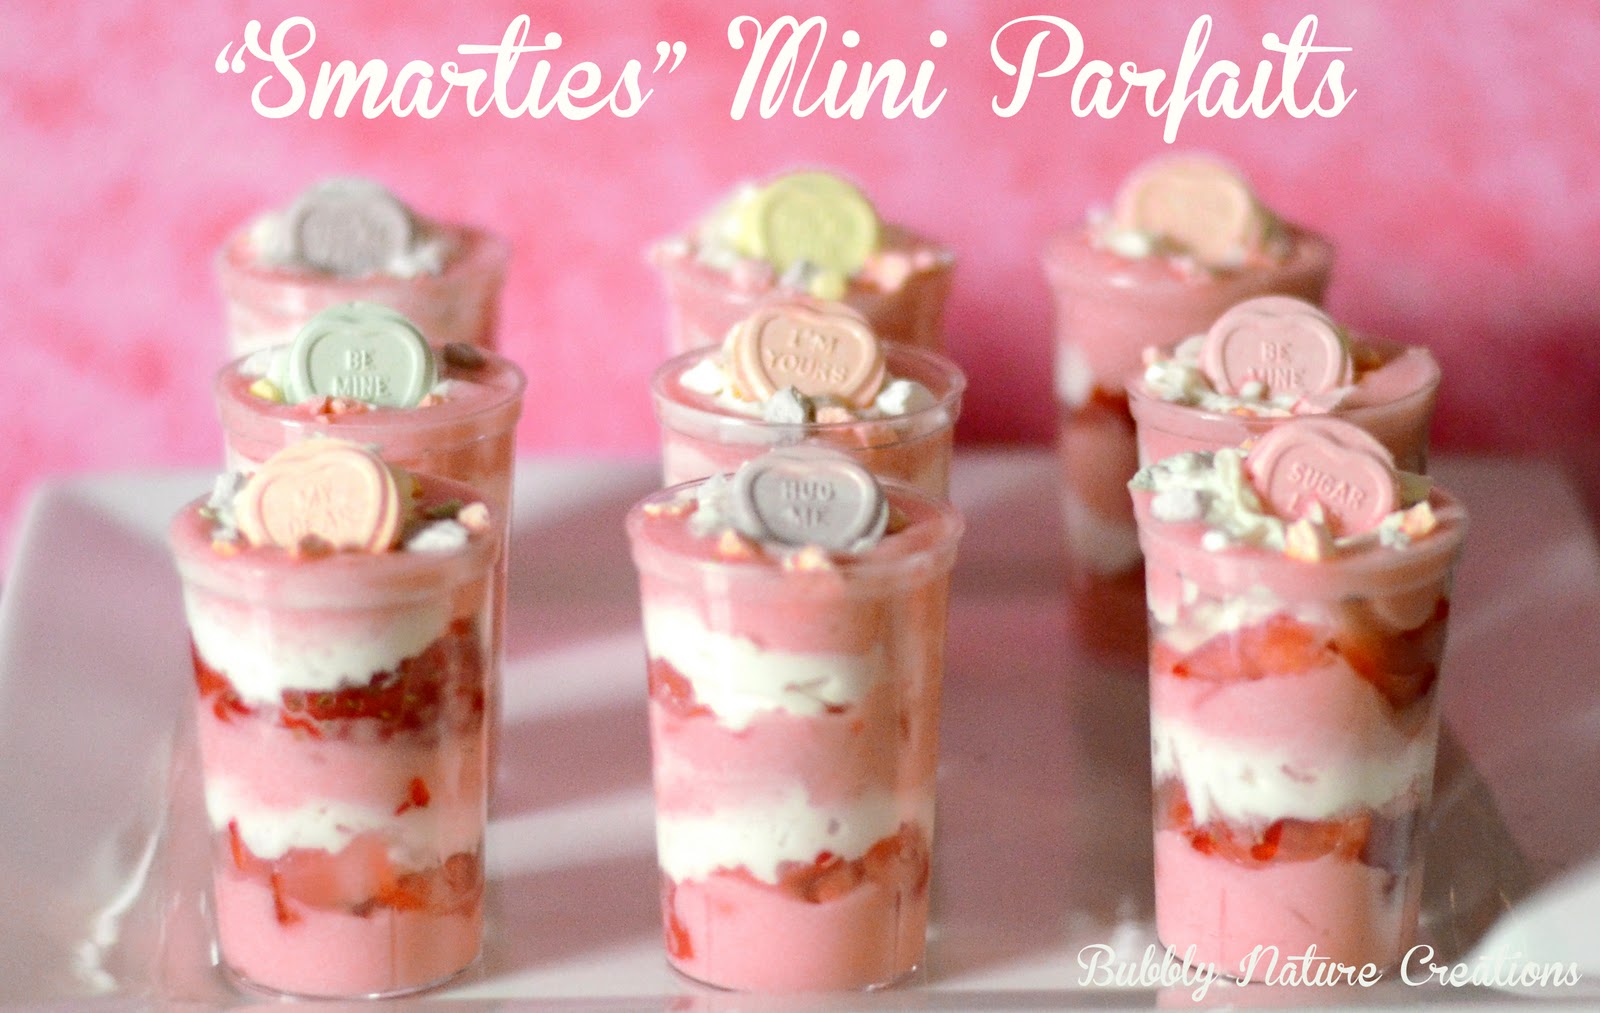 Smarties Mini Cakes